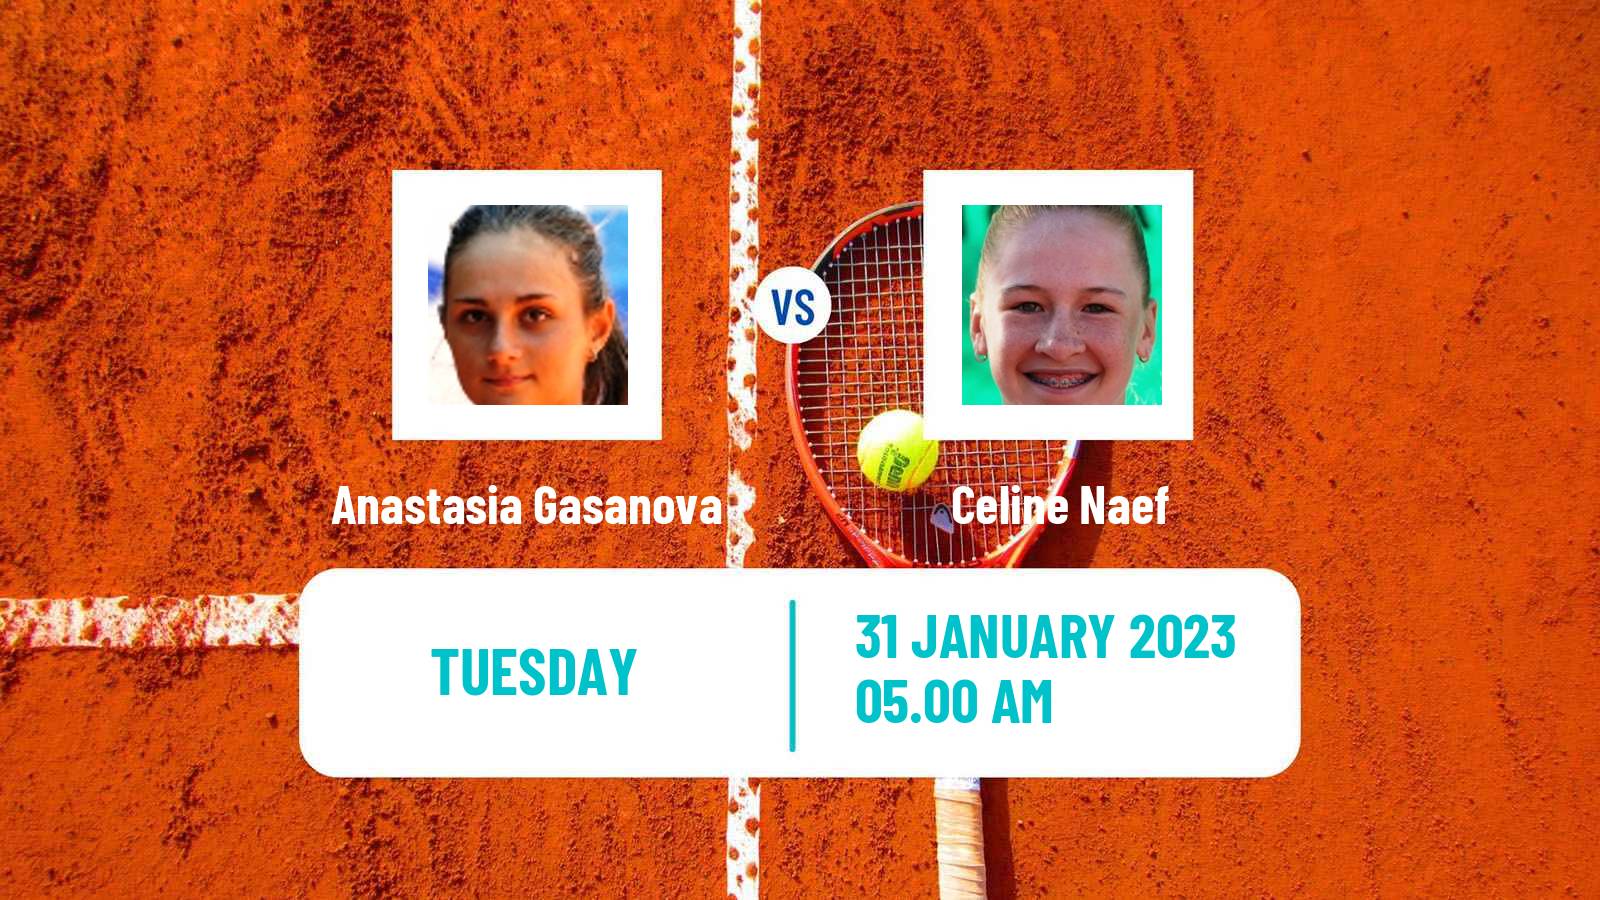 Tennis ITF Tournaments Anastasia Gasanova - Celine Naef